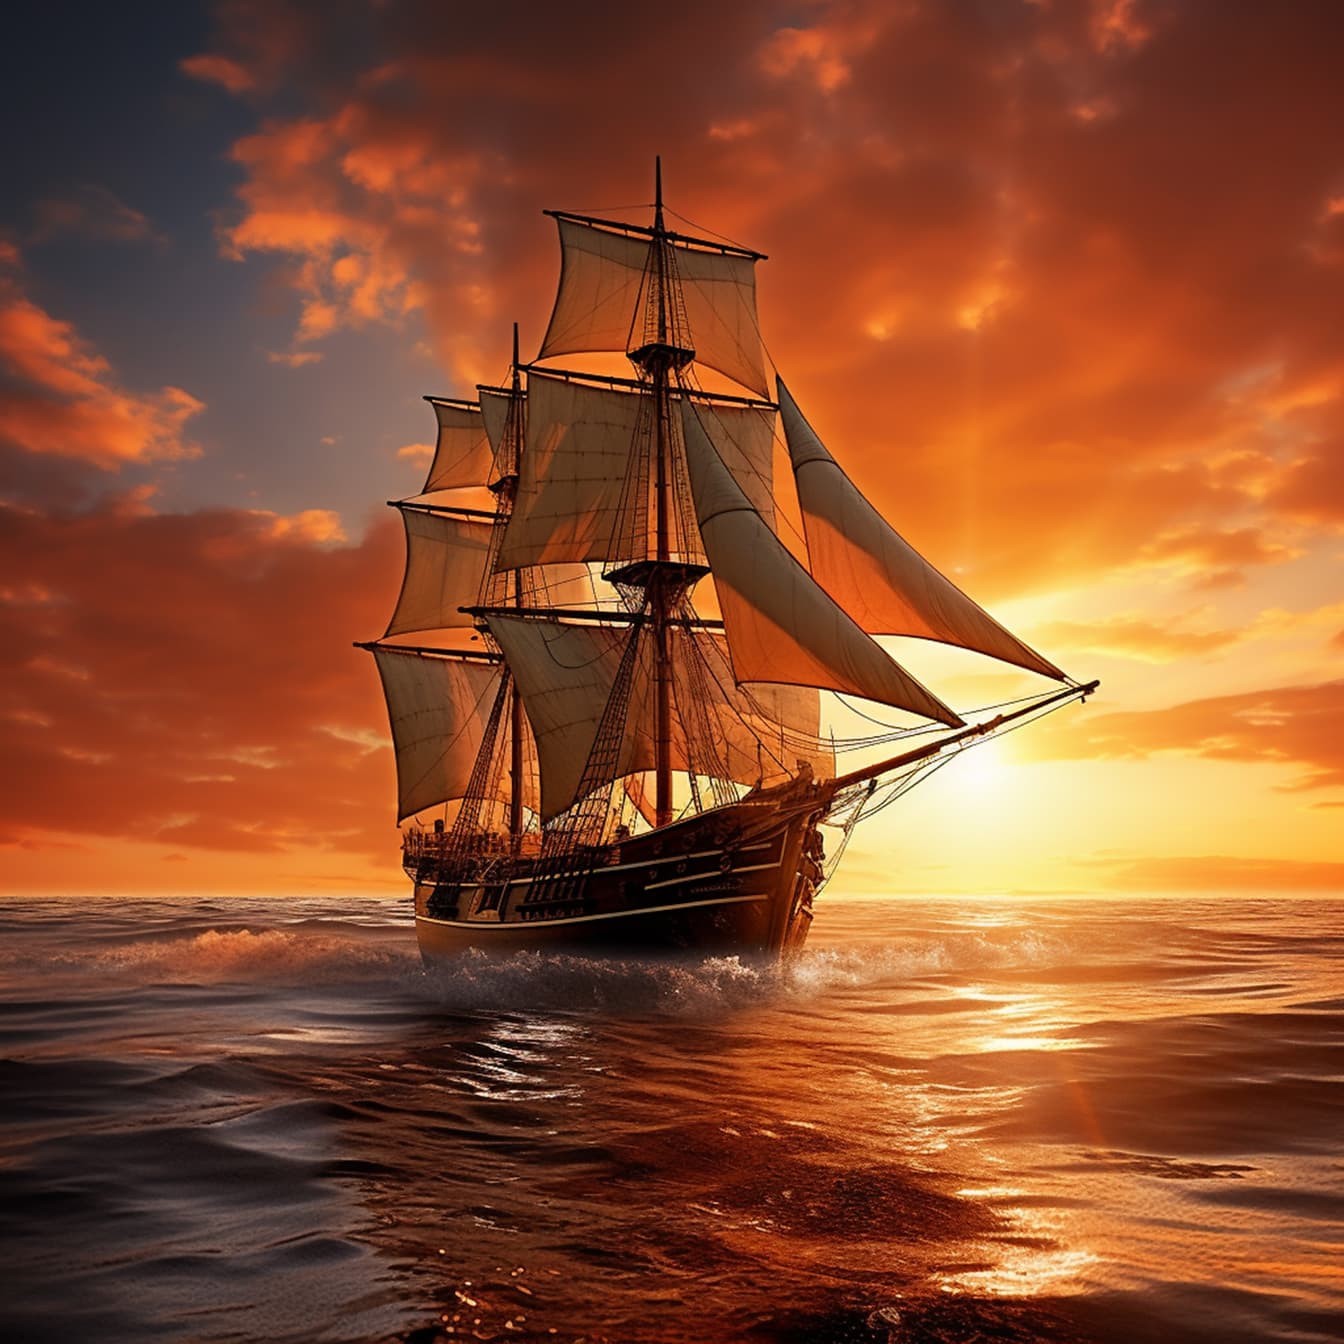 Zeilschip in oude stijl op oceaangolven met dramatische zonsondergangachtergrond